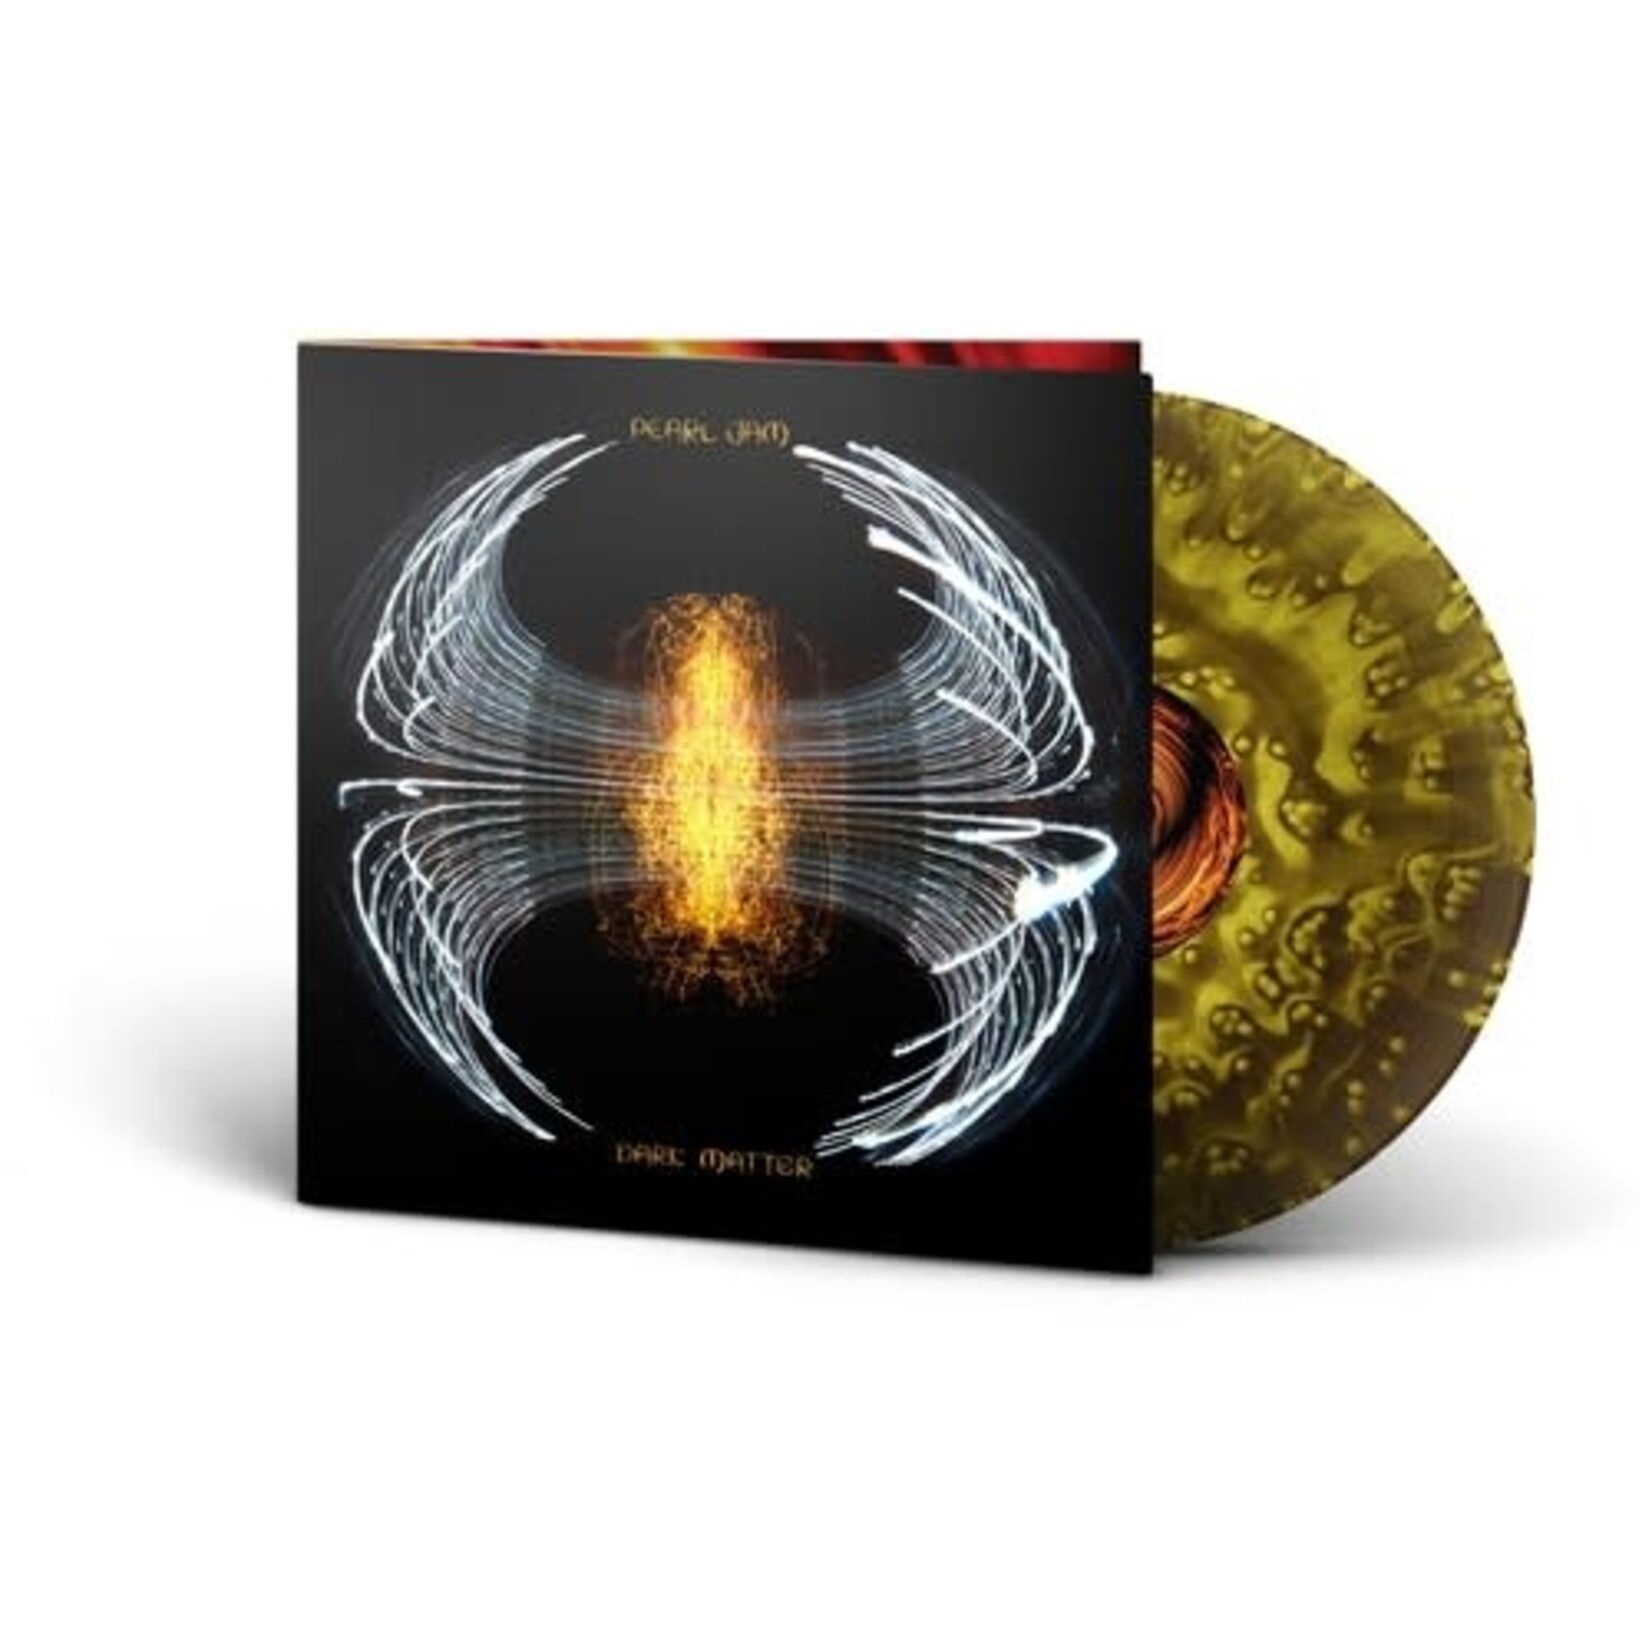 Pearl Jam - Dark Matter (Yellow/Black Vinyl) [LP] (RSD2024)